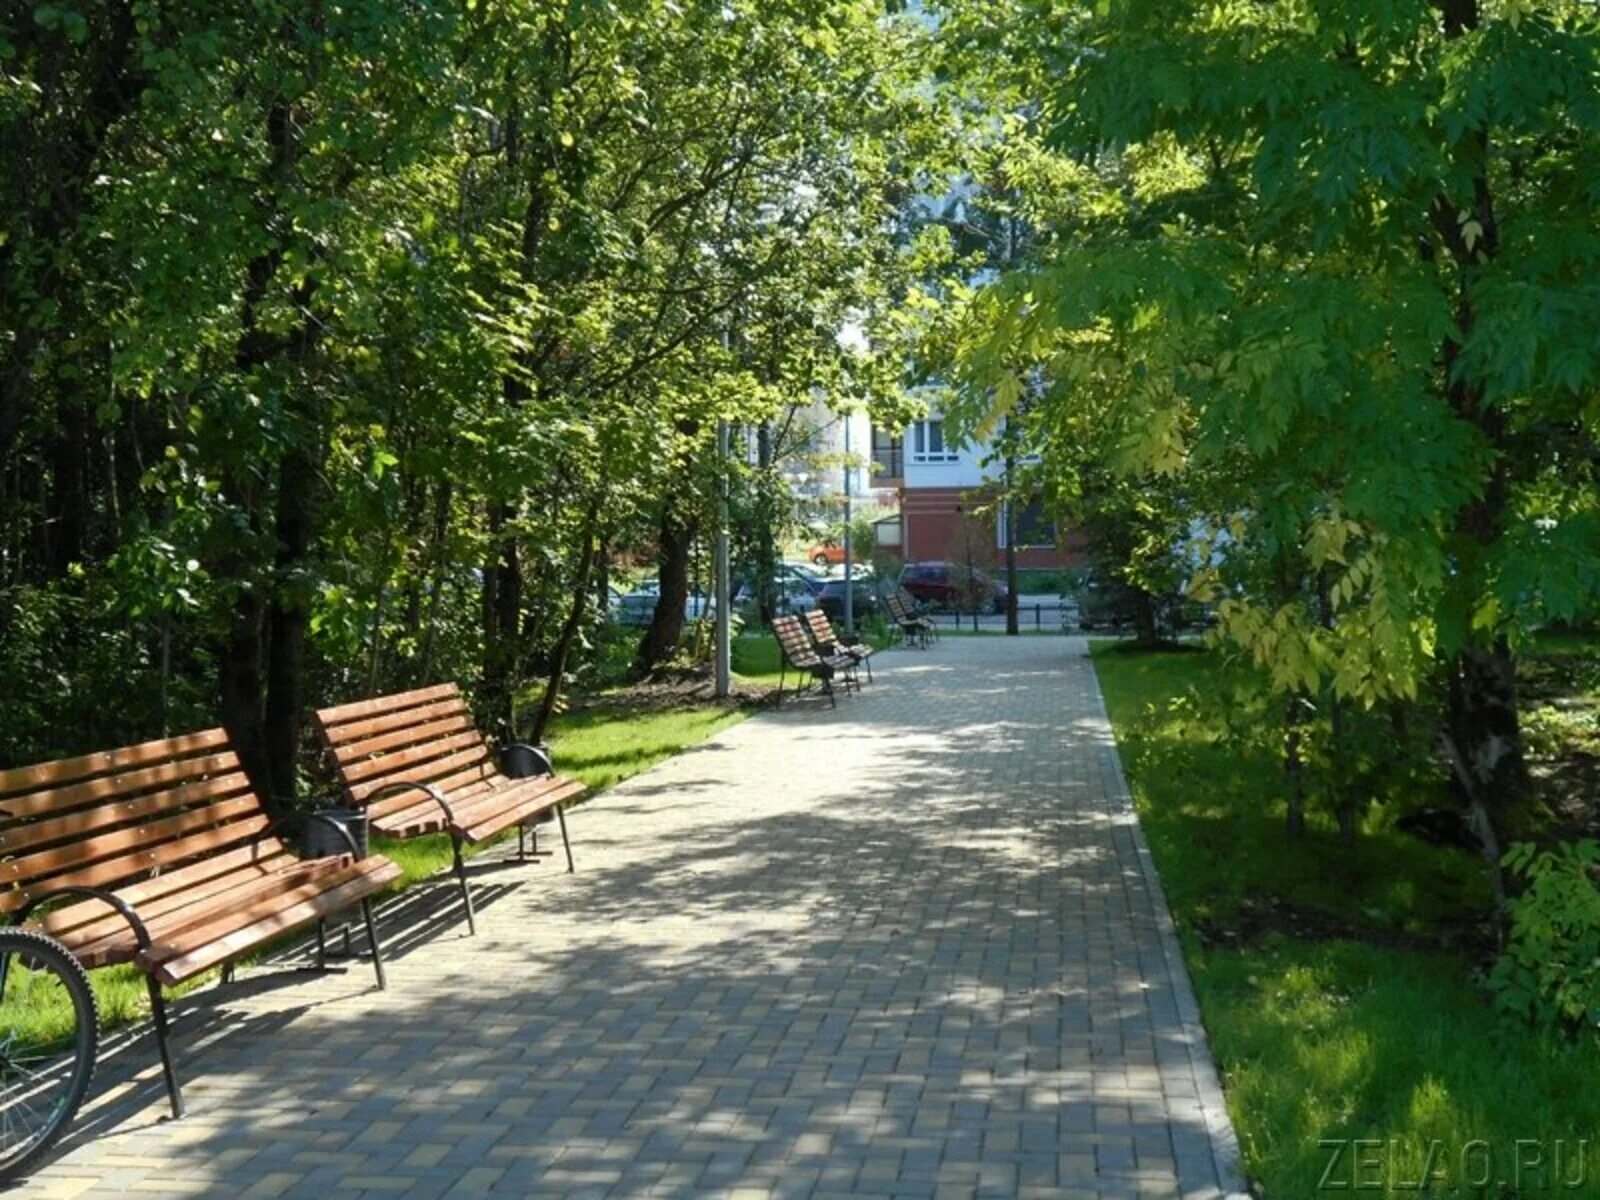 Зеленый парк зеленоград купить квартиру. Парк зеленый Бор в Зеленограде. Москва, парк зелёный Бор, Зеленоградский административный округ. Парк в 23 микрорайоне Зеленограда. Микрорайон зелёный Бор в Крюково.